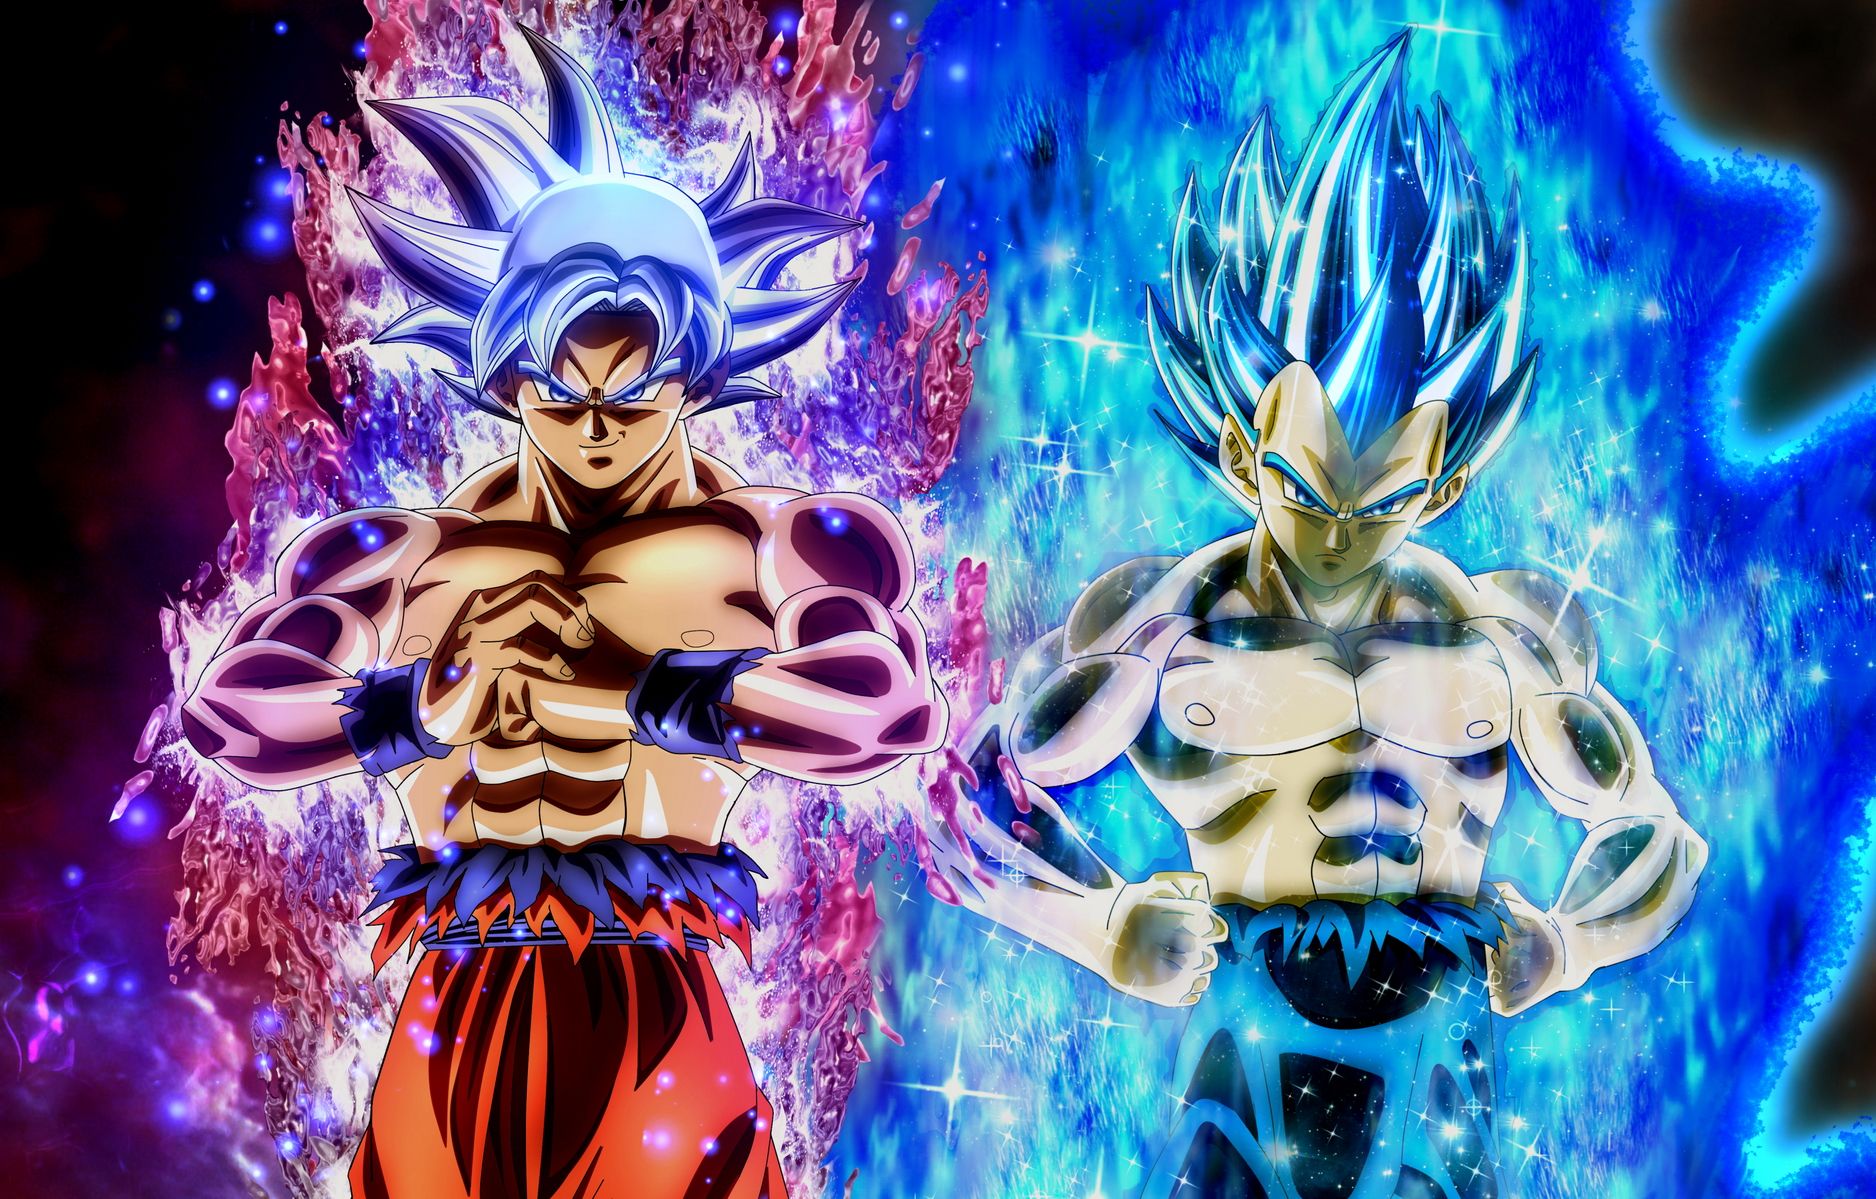 Goku Ultra Instinct: Cùng ngắm nhìn hình ảnh về Goku Ultra Instinct, trạng thái chiến đấu khi sức mạnh phát huy tối đa. Hãy tận hưởng khung cảnh bạc thạch và những ánh sáng đón lấy Goku, khi anh ta sẵn sàng đối đầu với mọi thử thách.